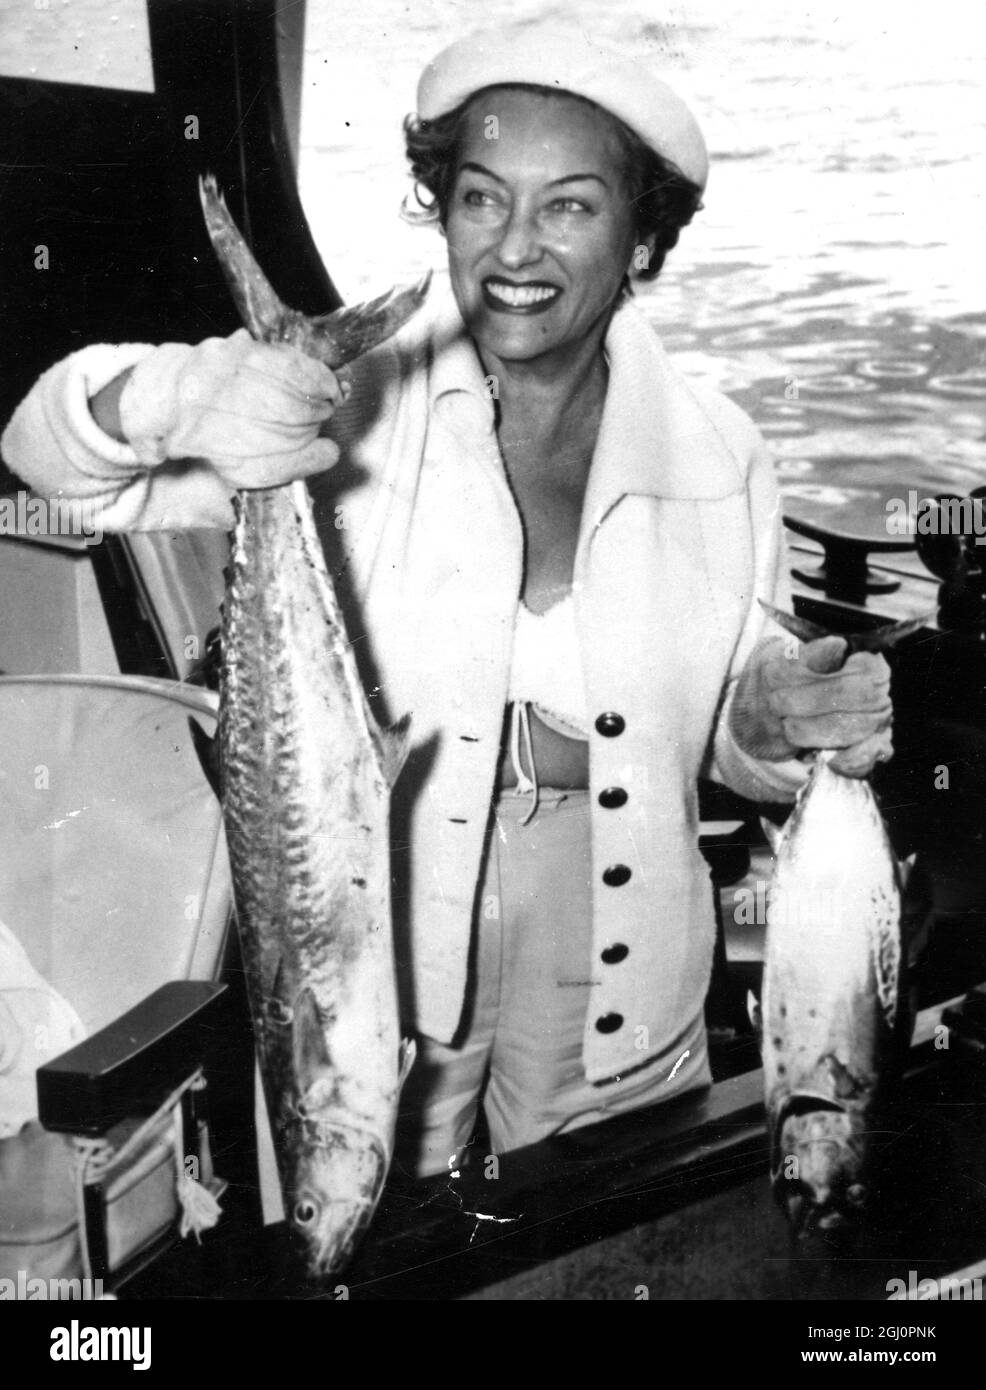 Gloria Swanson, amerikanische Schauspielerin, Sängerin und Produzentin, hier auf einem Boot gesehen, nachdem sie zwei Fische gefangen hatte. [Bildunterschrift auf Französisch] 2. Februar 1953 Stockfoto